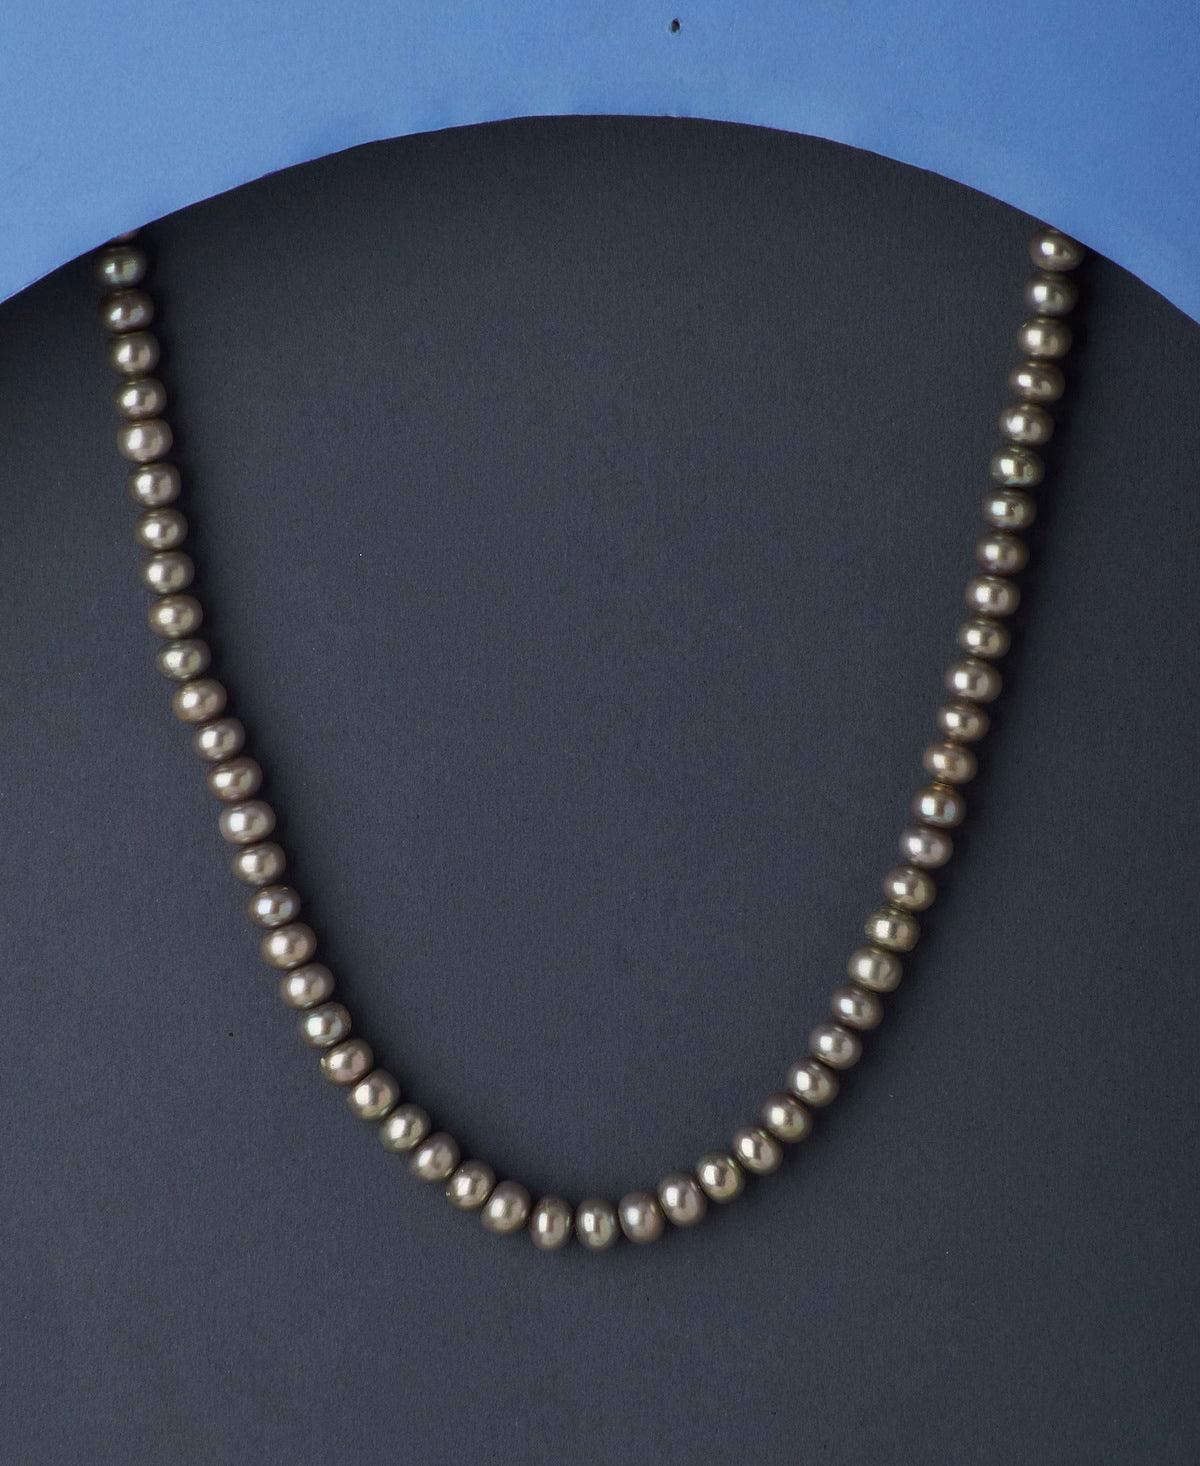 Unique Fashionable Pearl Necklace - Chandrani Pearls